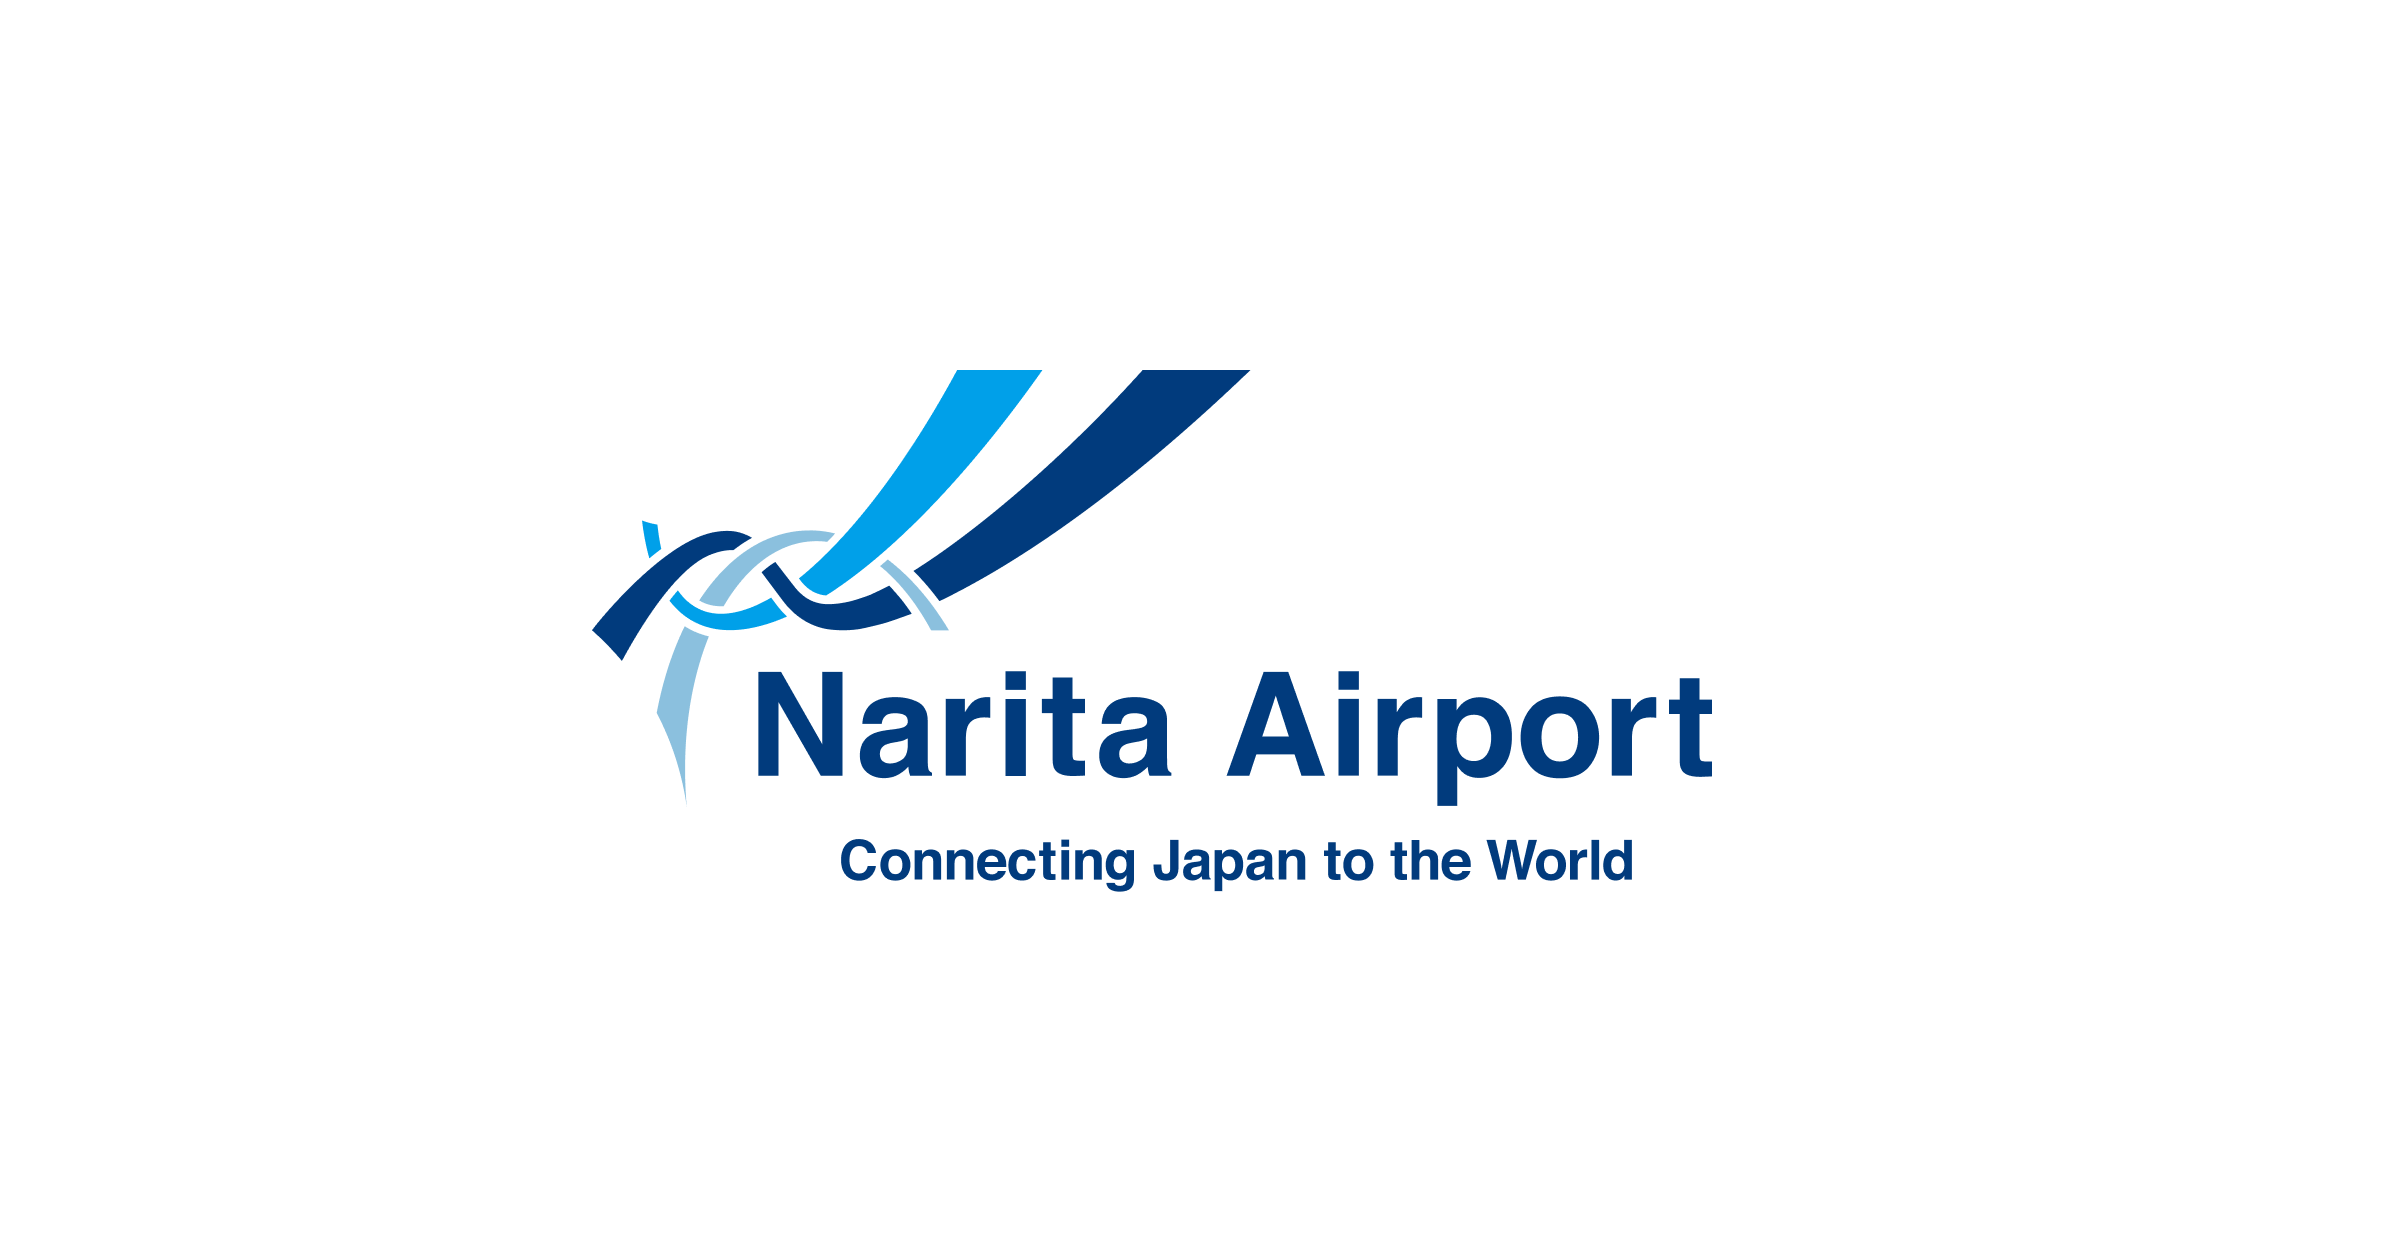 www.narita-airport.jp